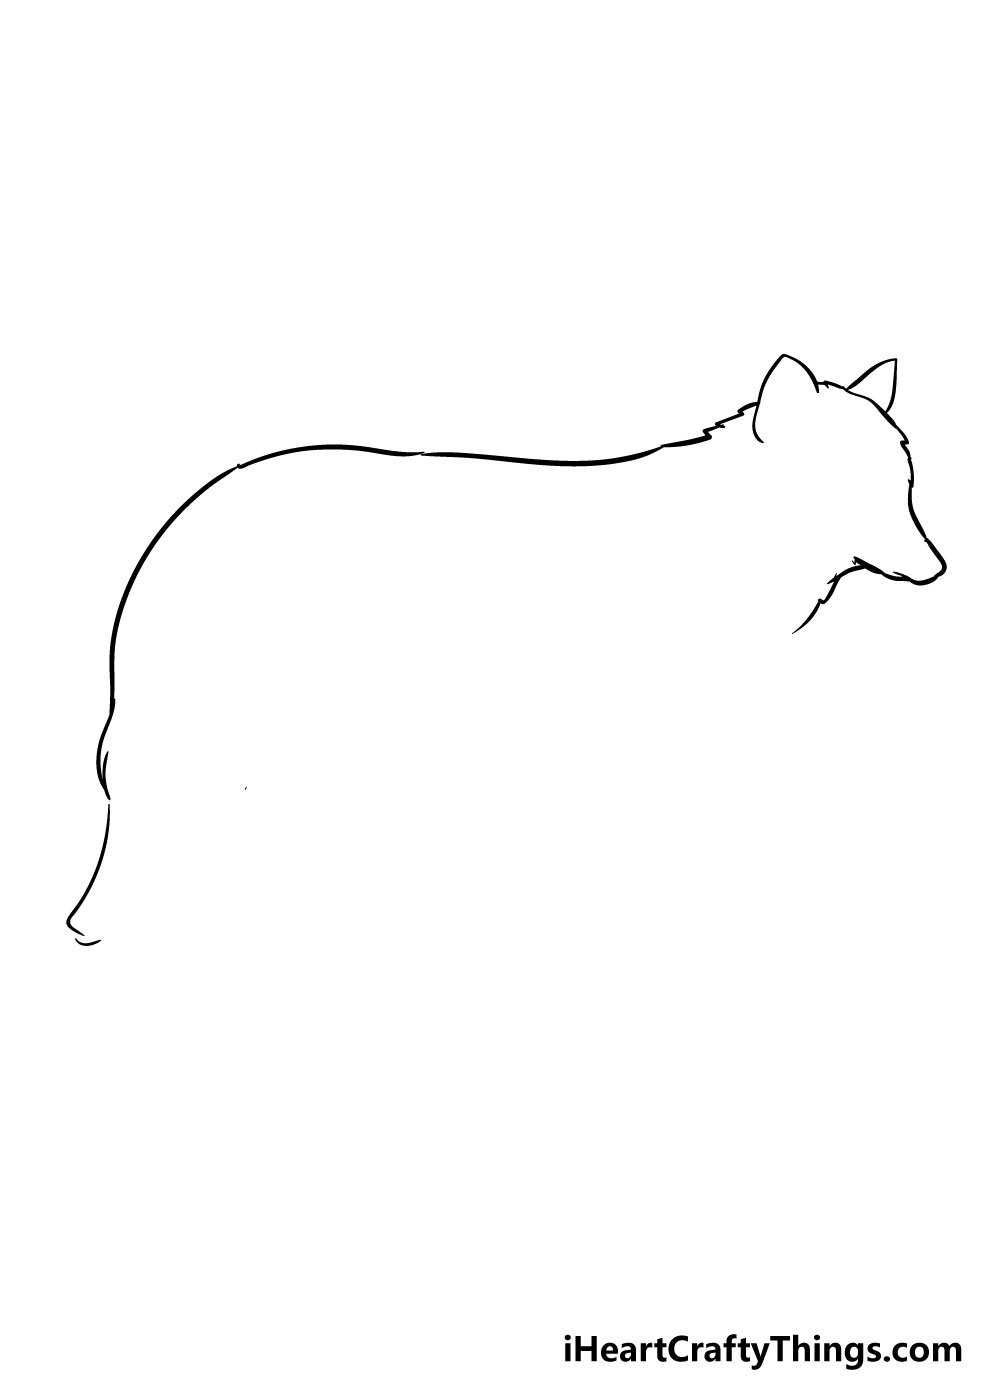 How to draw Wolf 2 - Hướng dẫn cách vẽ con chó sói đơn giản với 6 bước cơ bản